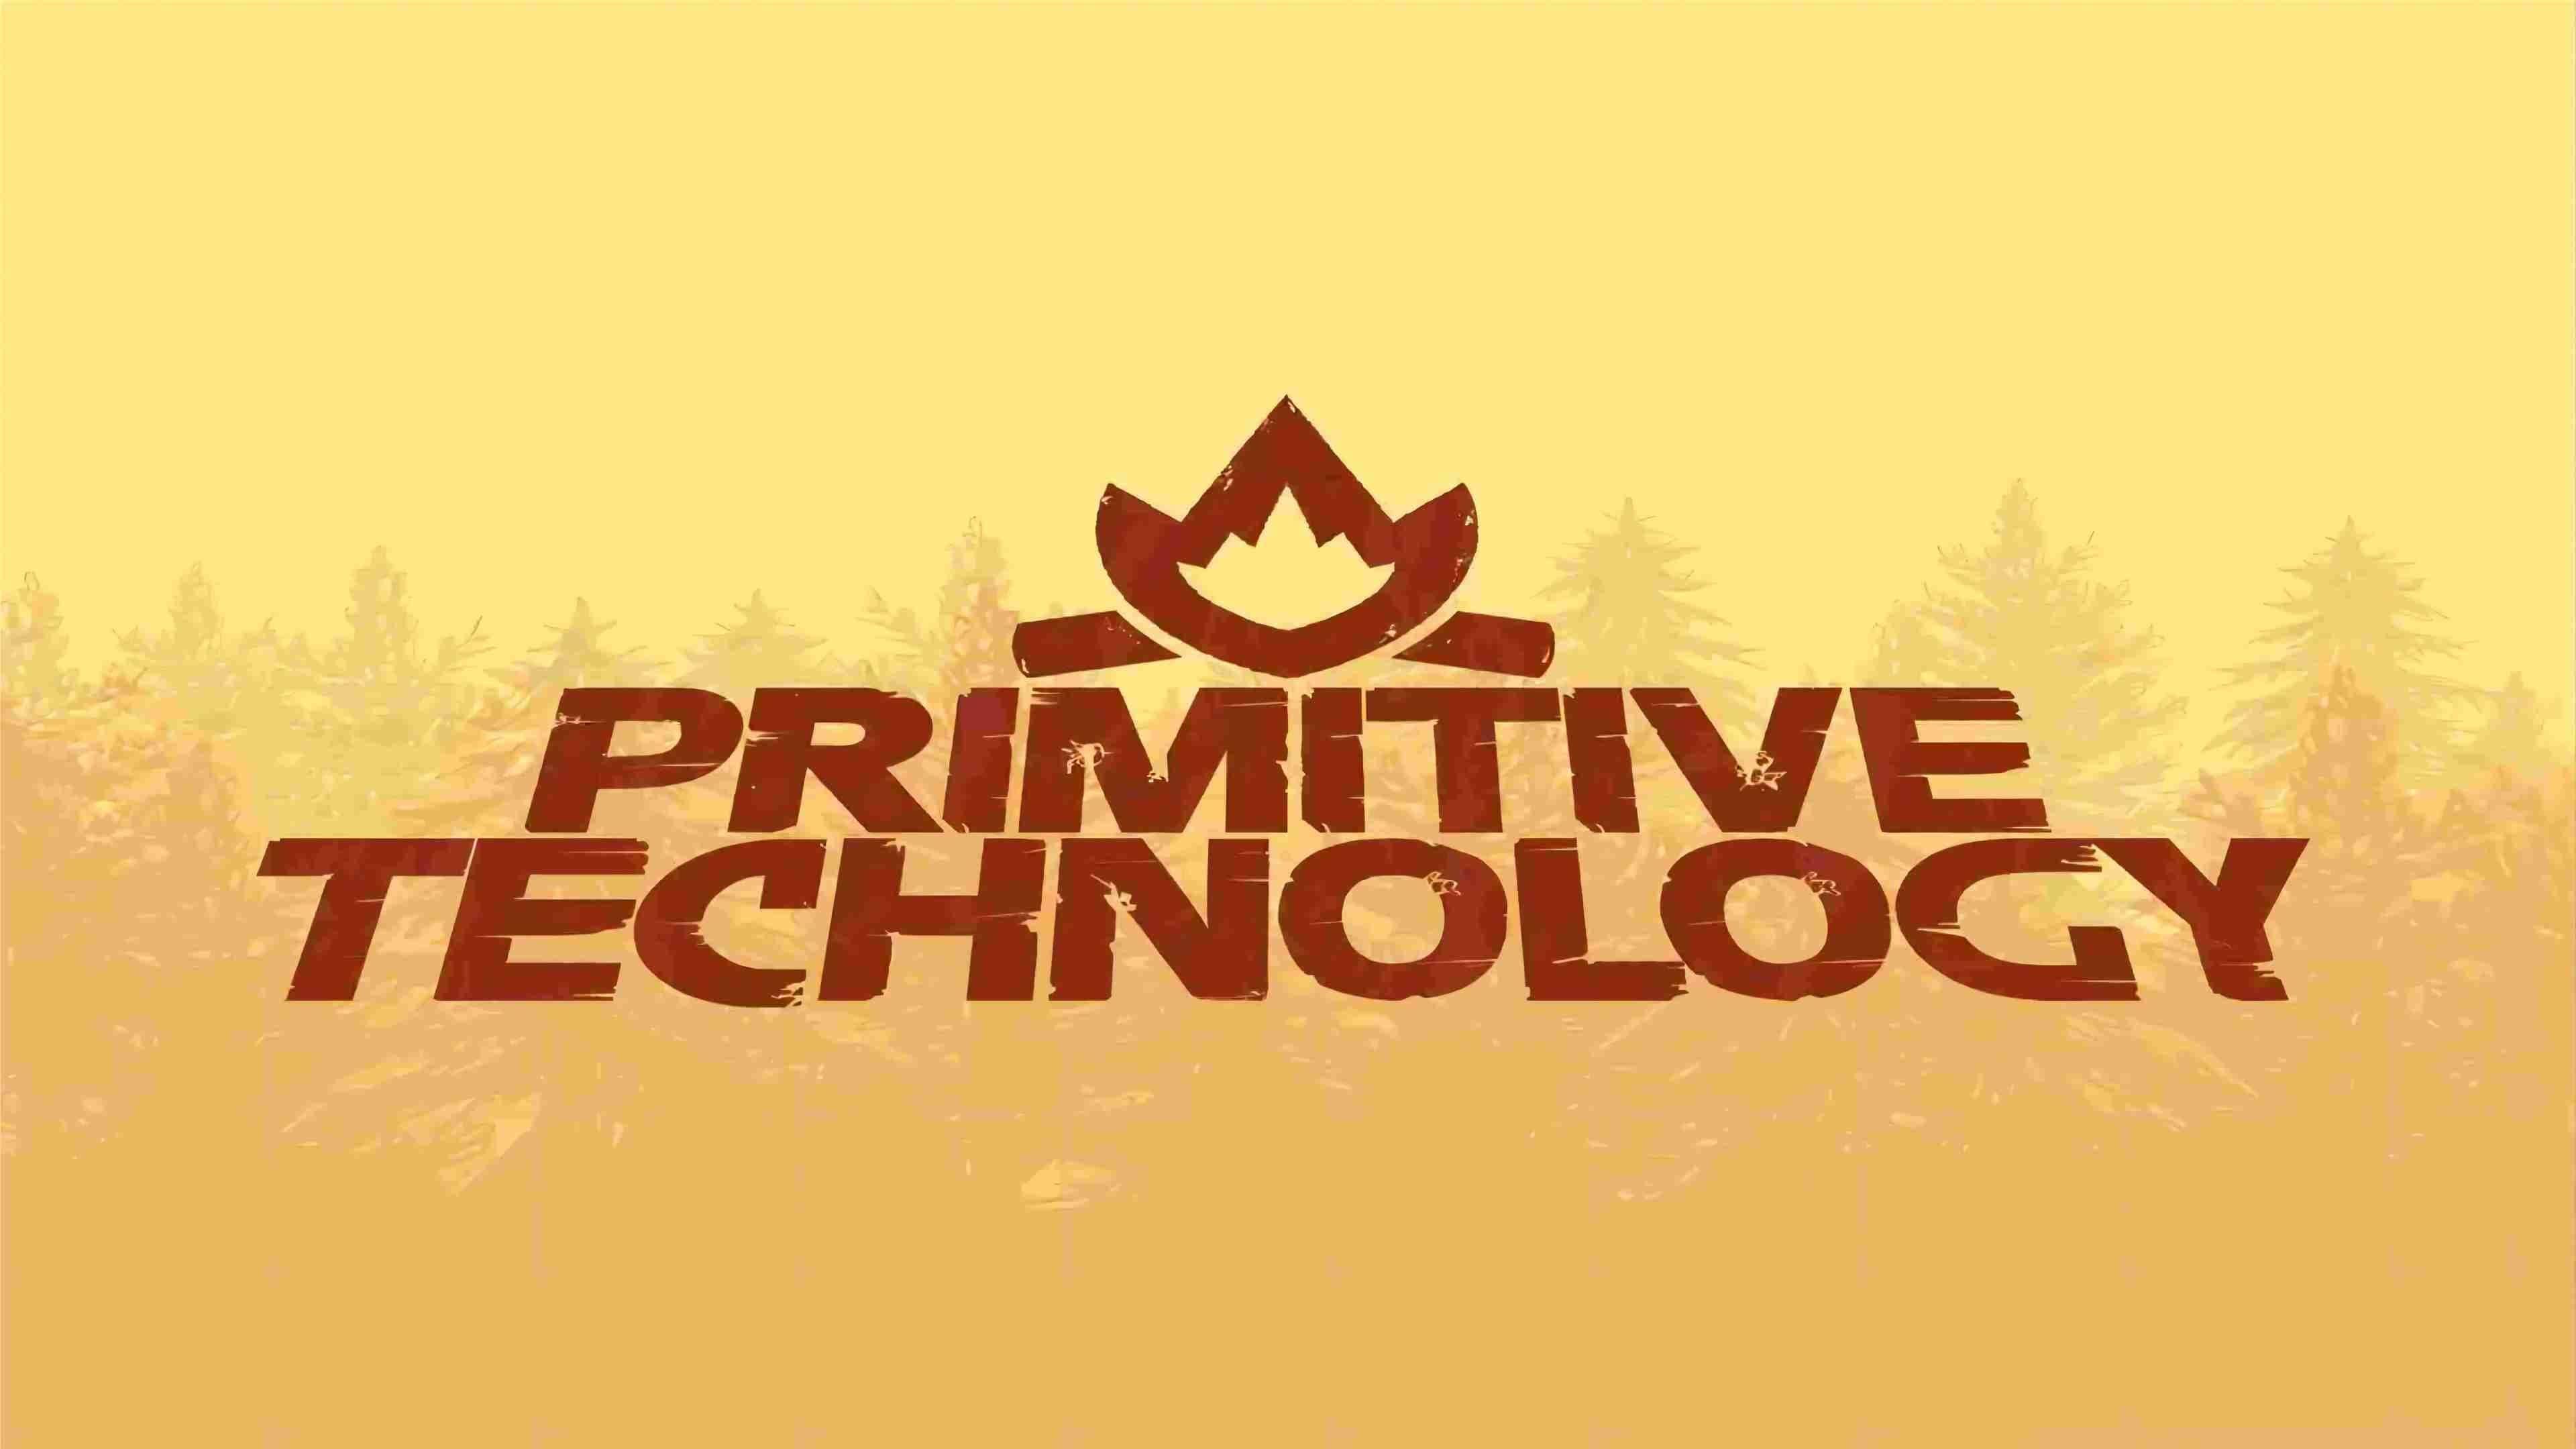 Primitive Technology backdrop